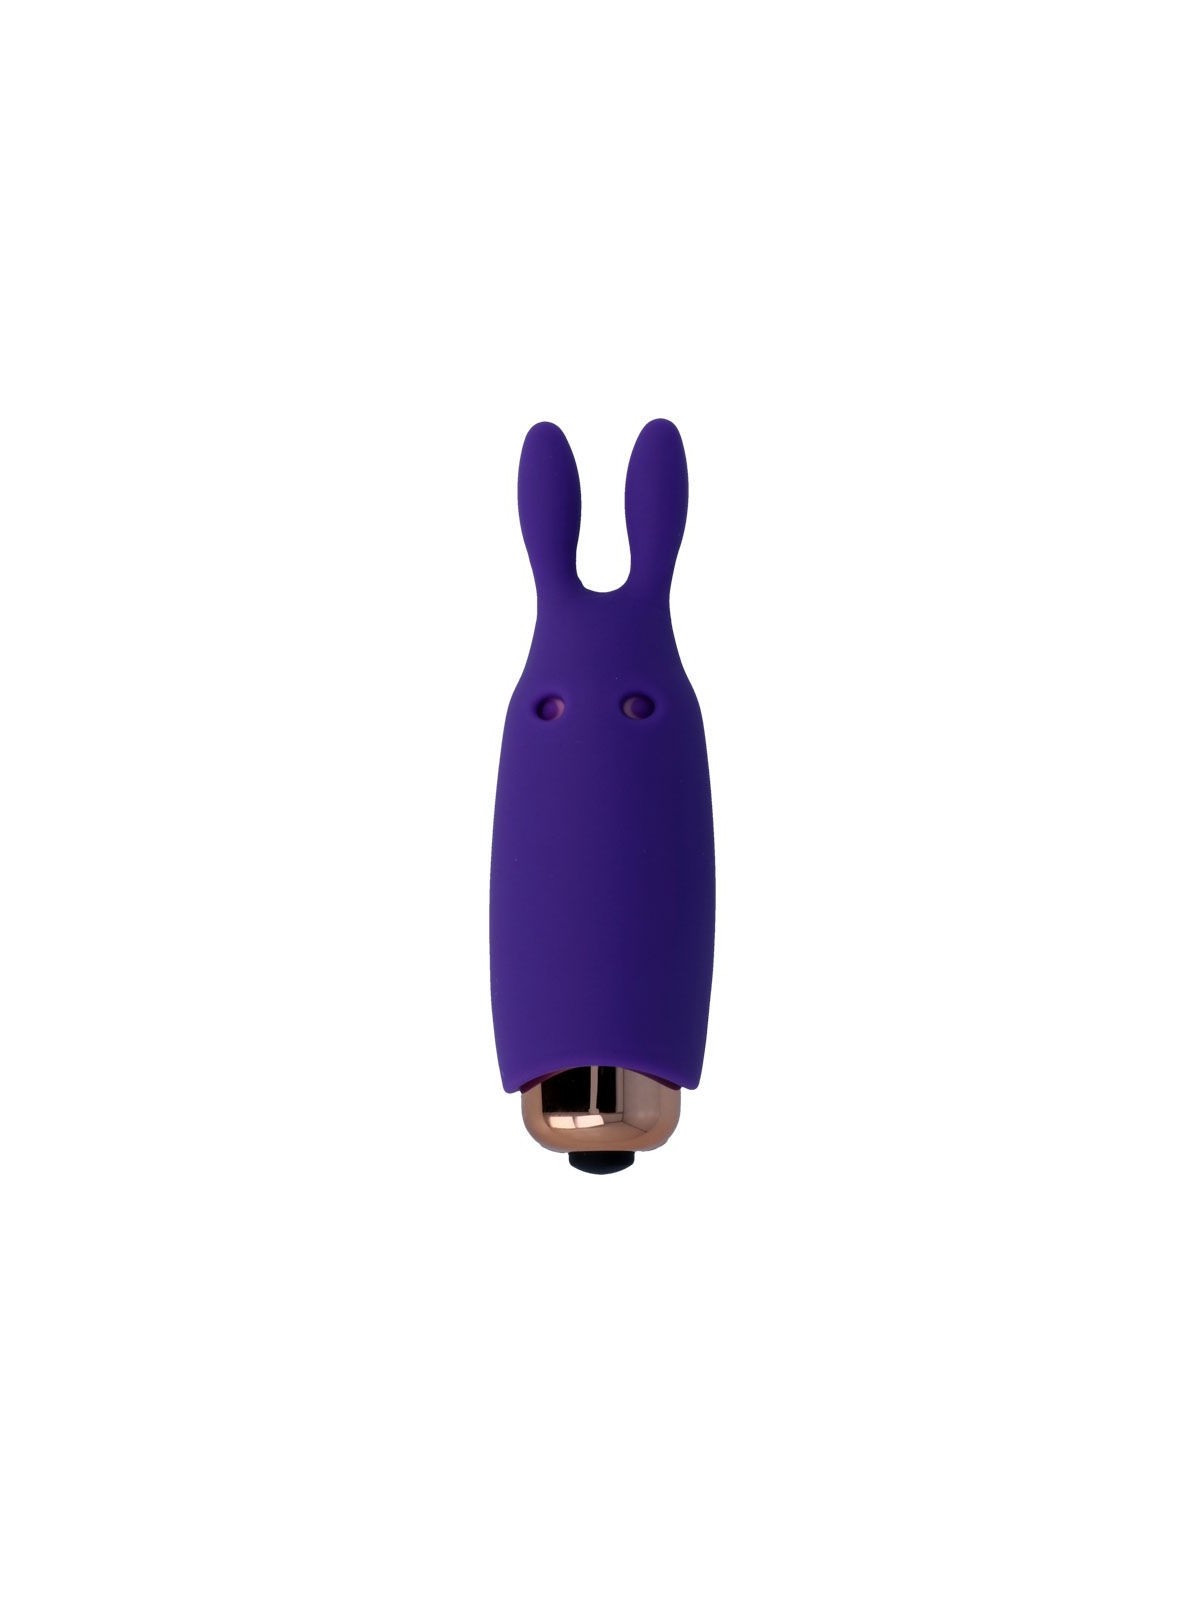 Womanvibe Bugsy Estimulador Silicona - Comprar Estimulador clítoris Womanvibe - Estimuladores de clítoris (1)